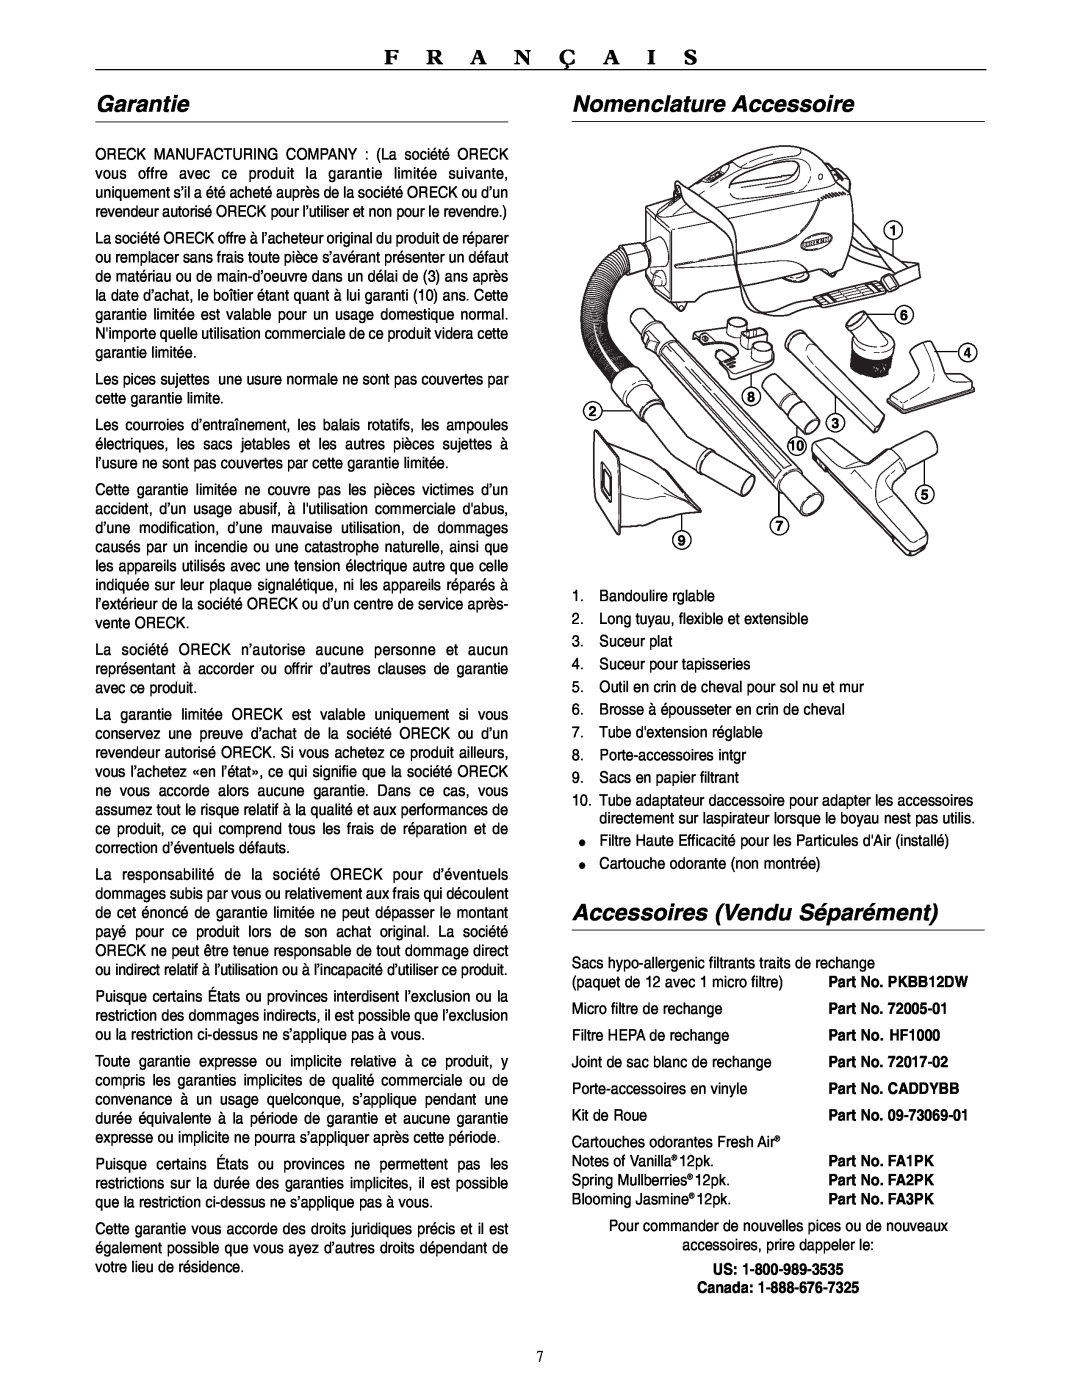 Oreck BB1100 warranty Garantie, Nomenclature Accessoire, Accessoires Vendu Séparément, F R A N Ç A I S 